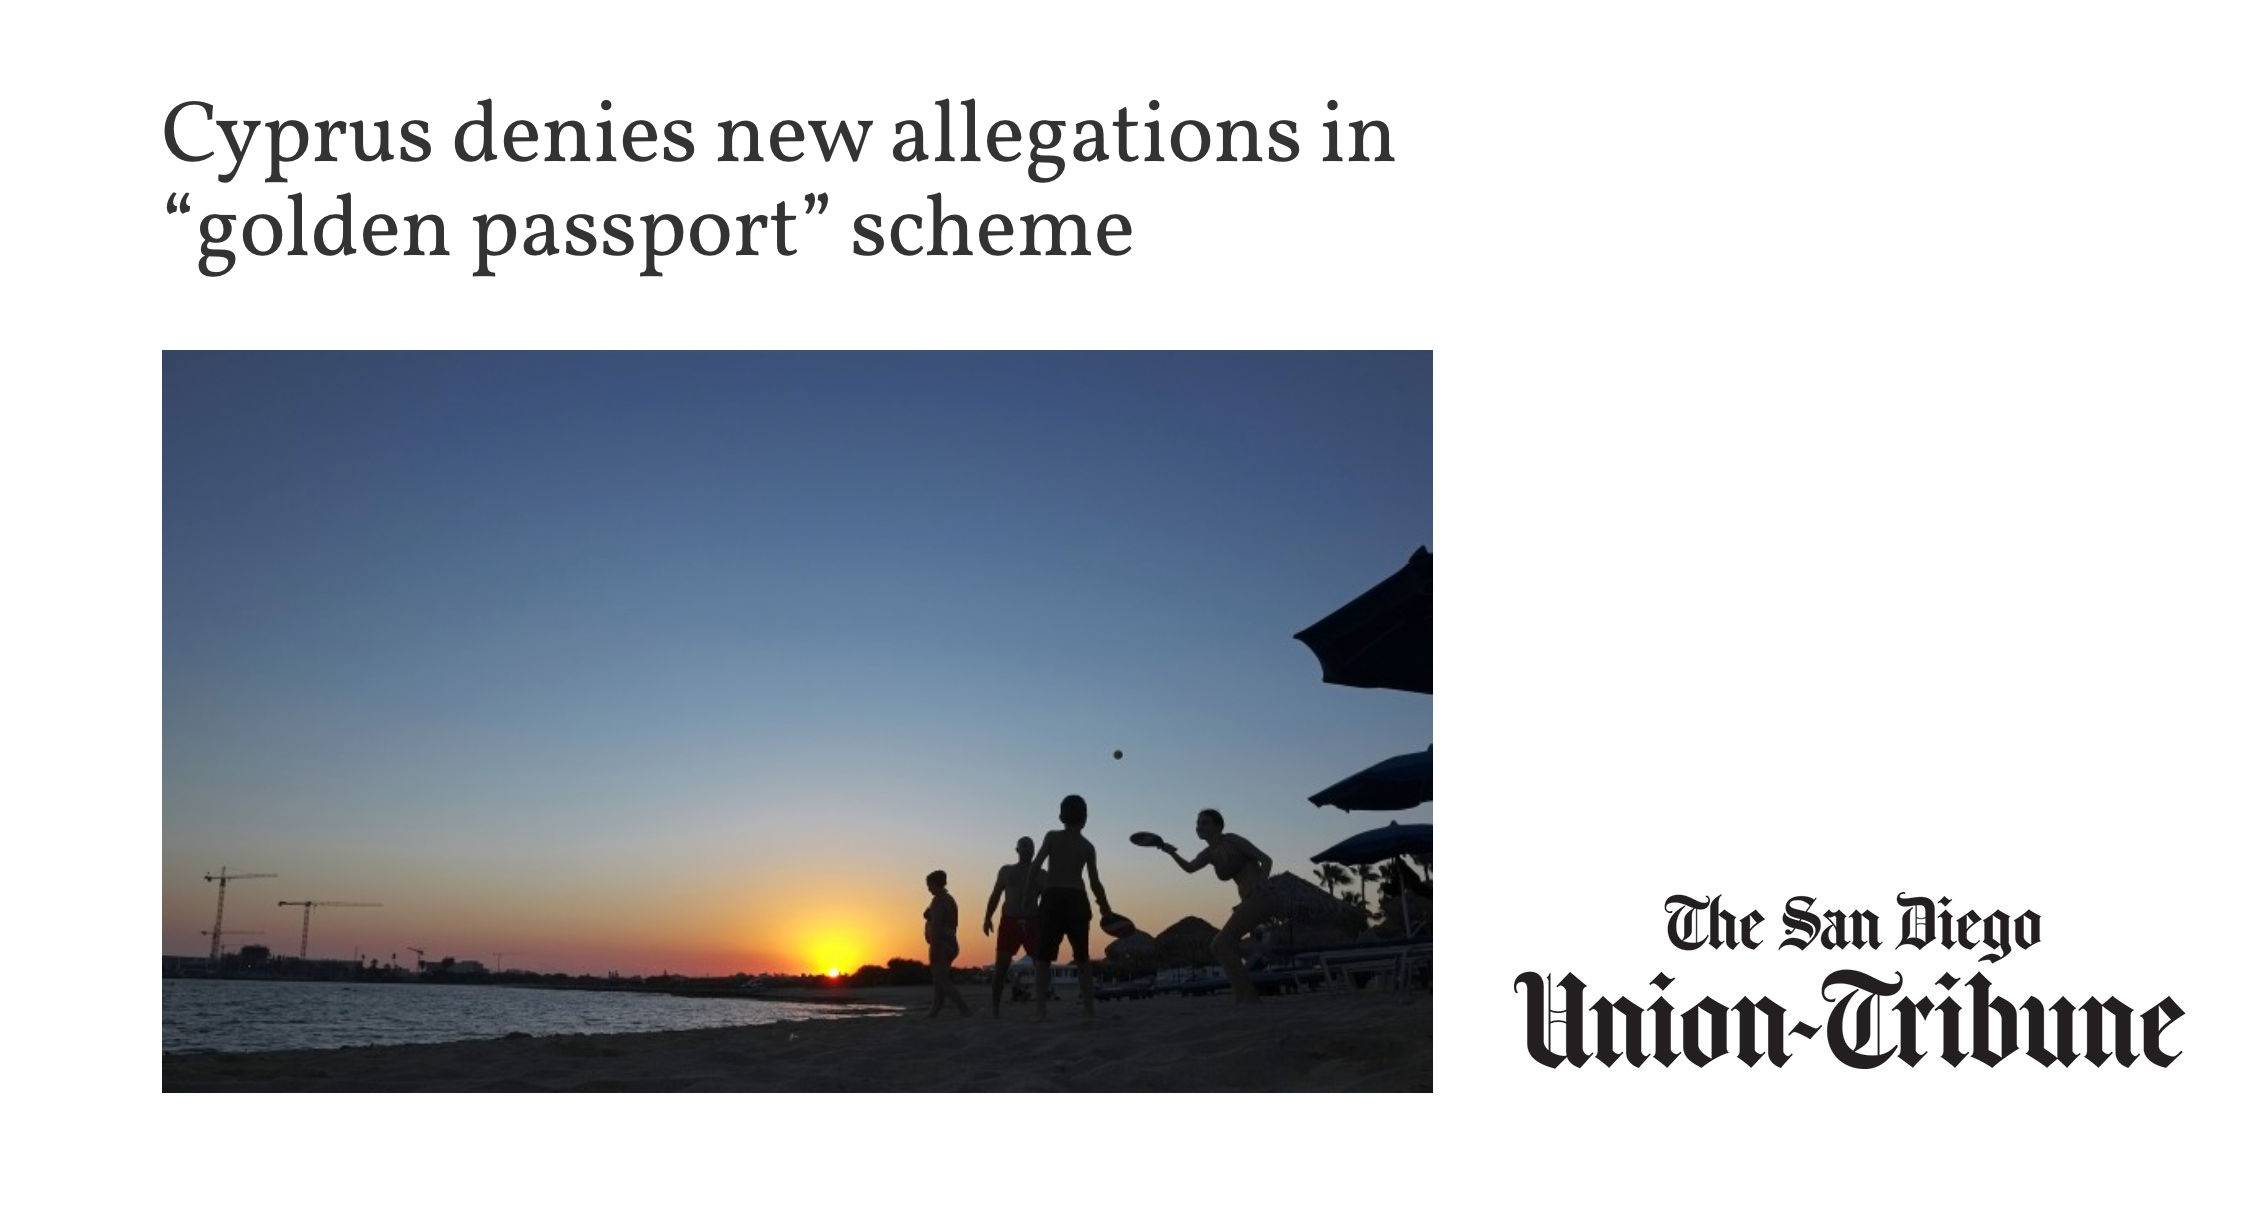 San Diego Tribune: Cyprus denies new allegations in “golden passport” scheme